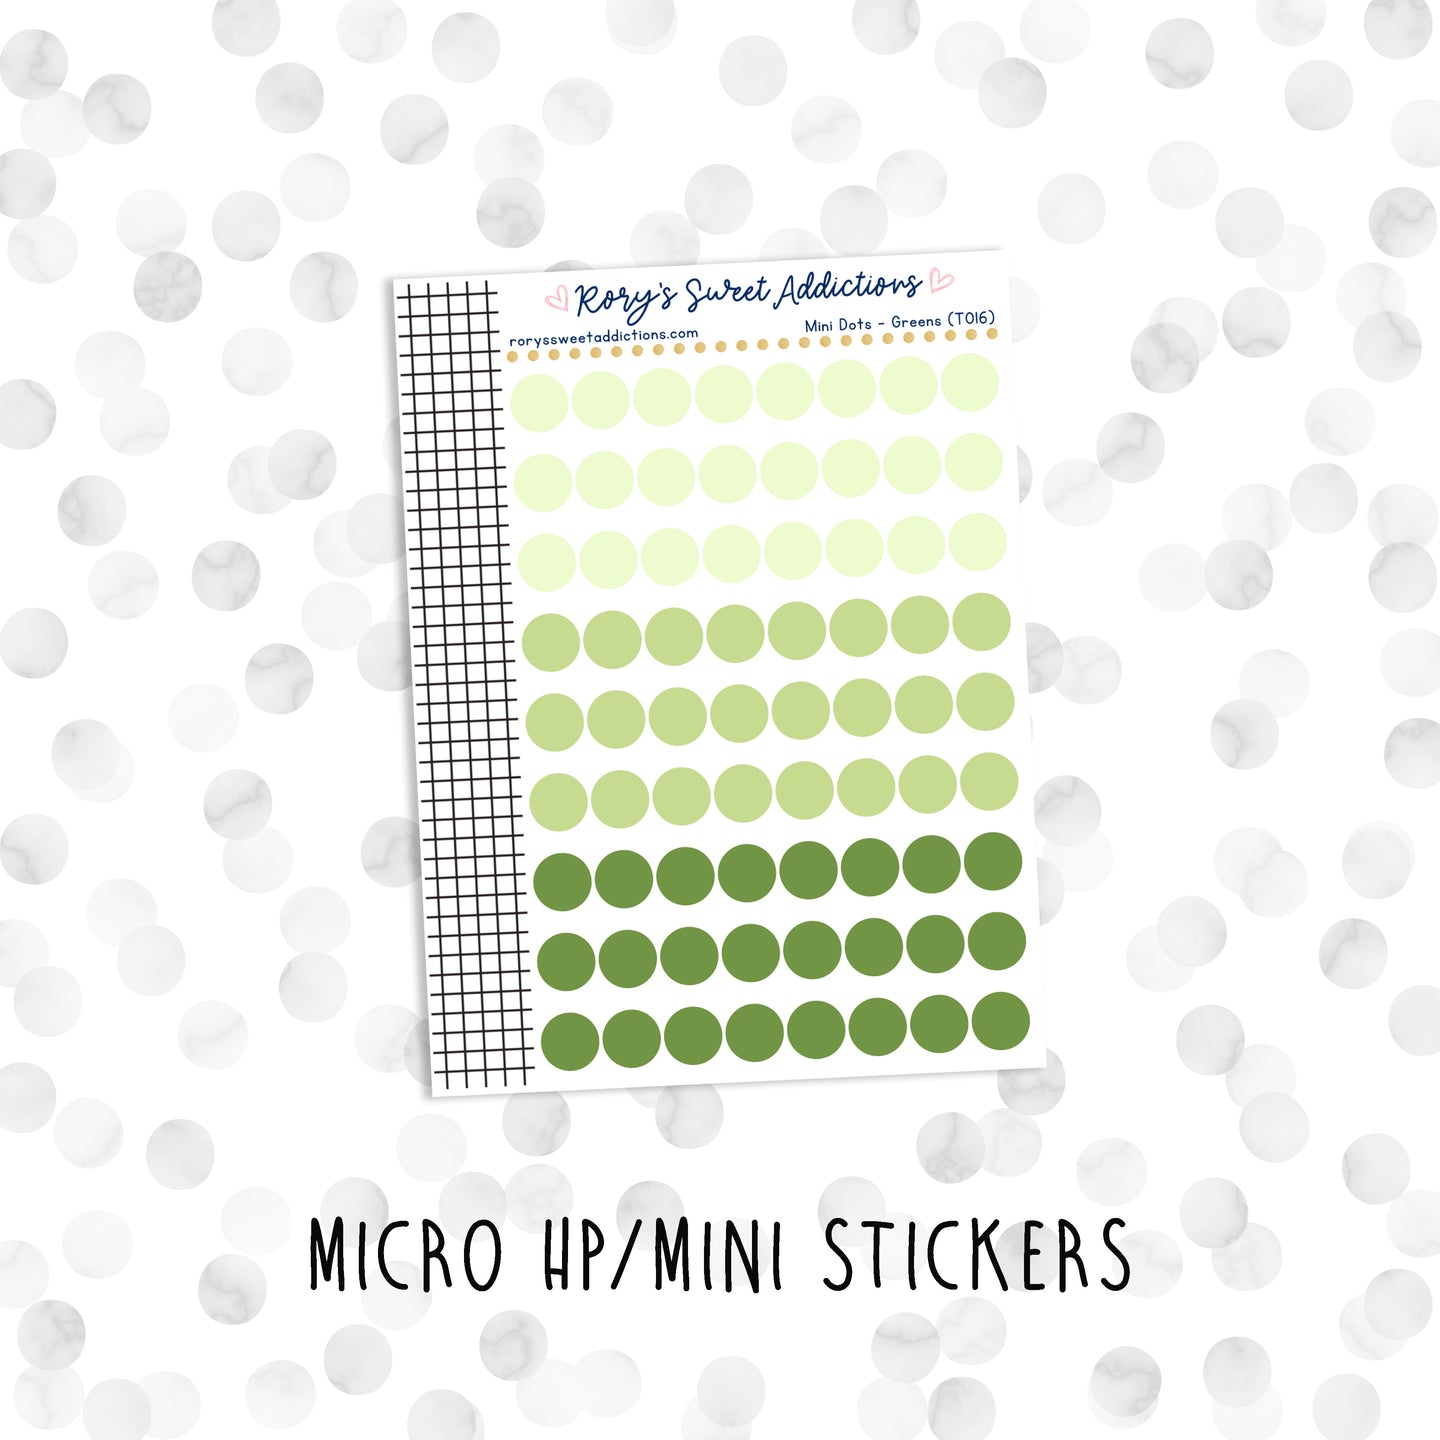 Mini Dots - Greens // Micro HP - Mini Stickers